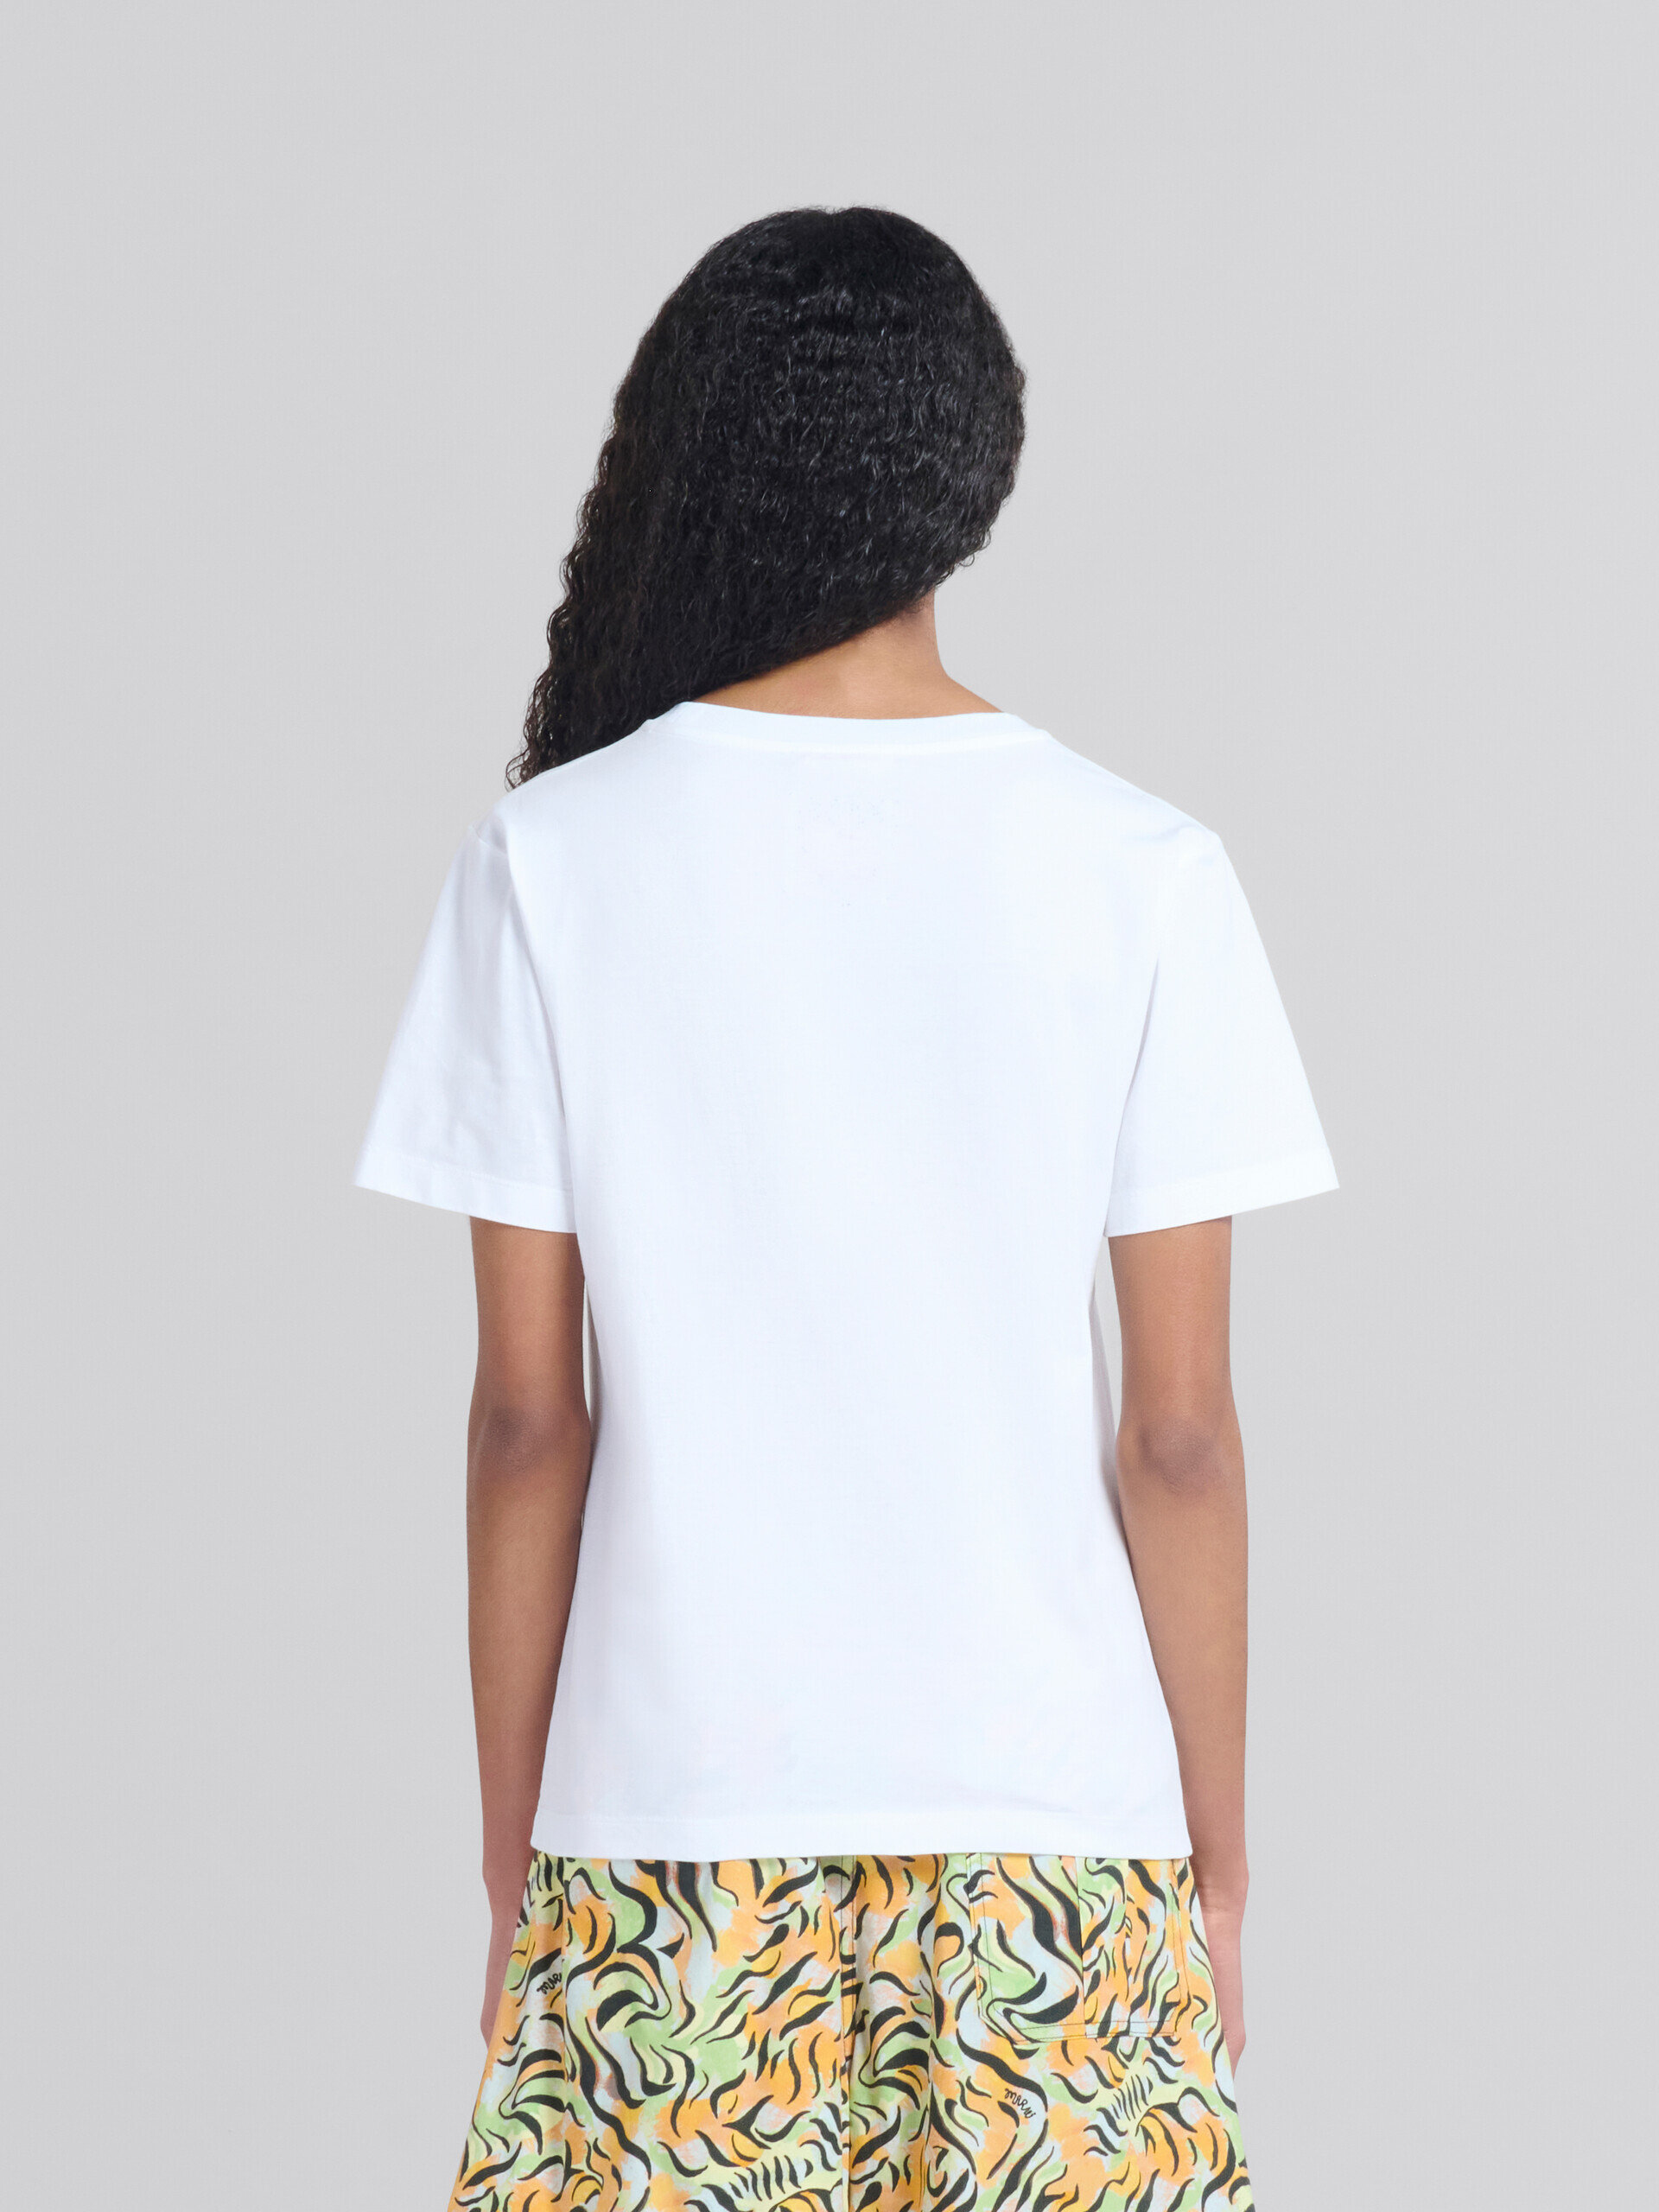 プリント入りホワイトのオーガニックジャージー製レギュラーフィットTシャツ - Tシャツ - Image 3